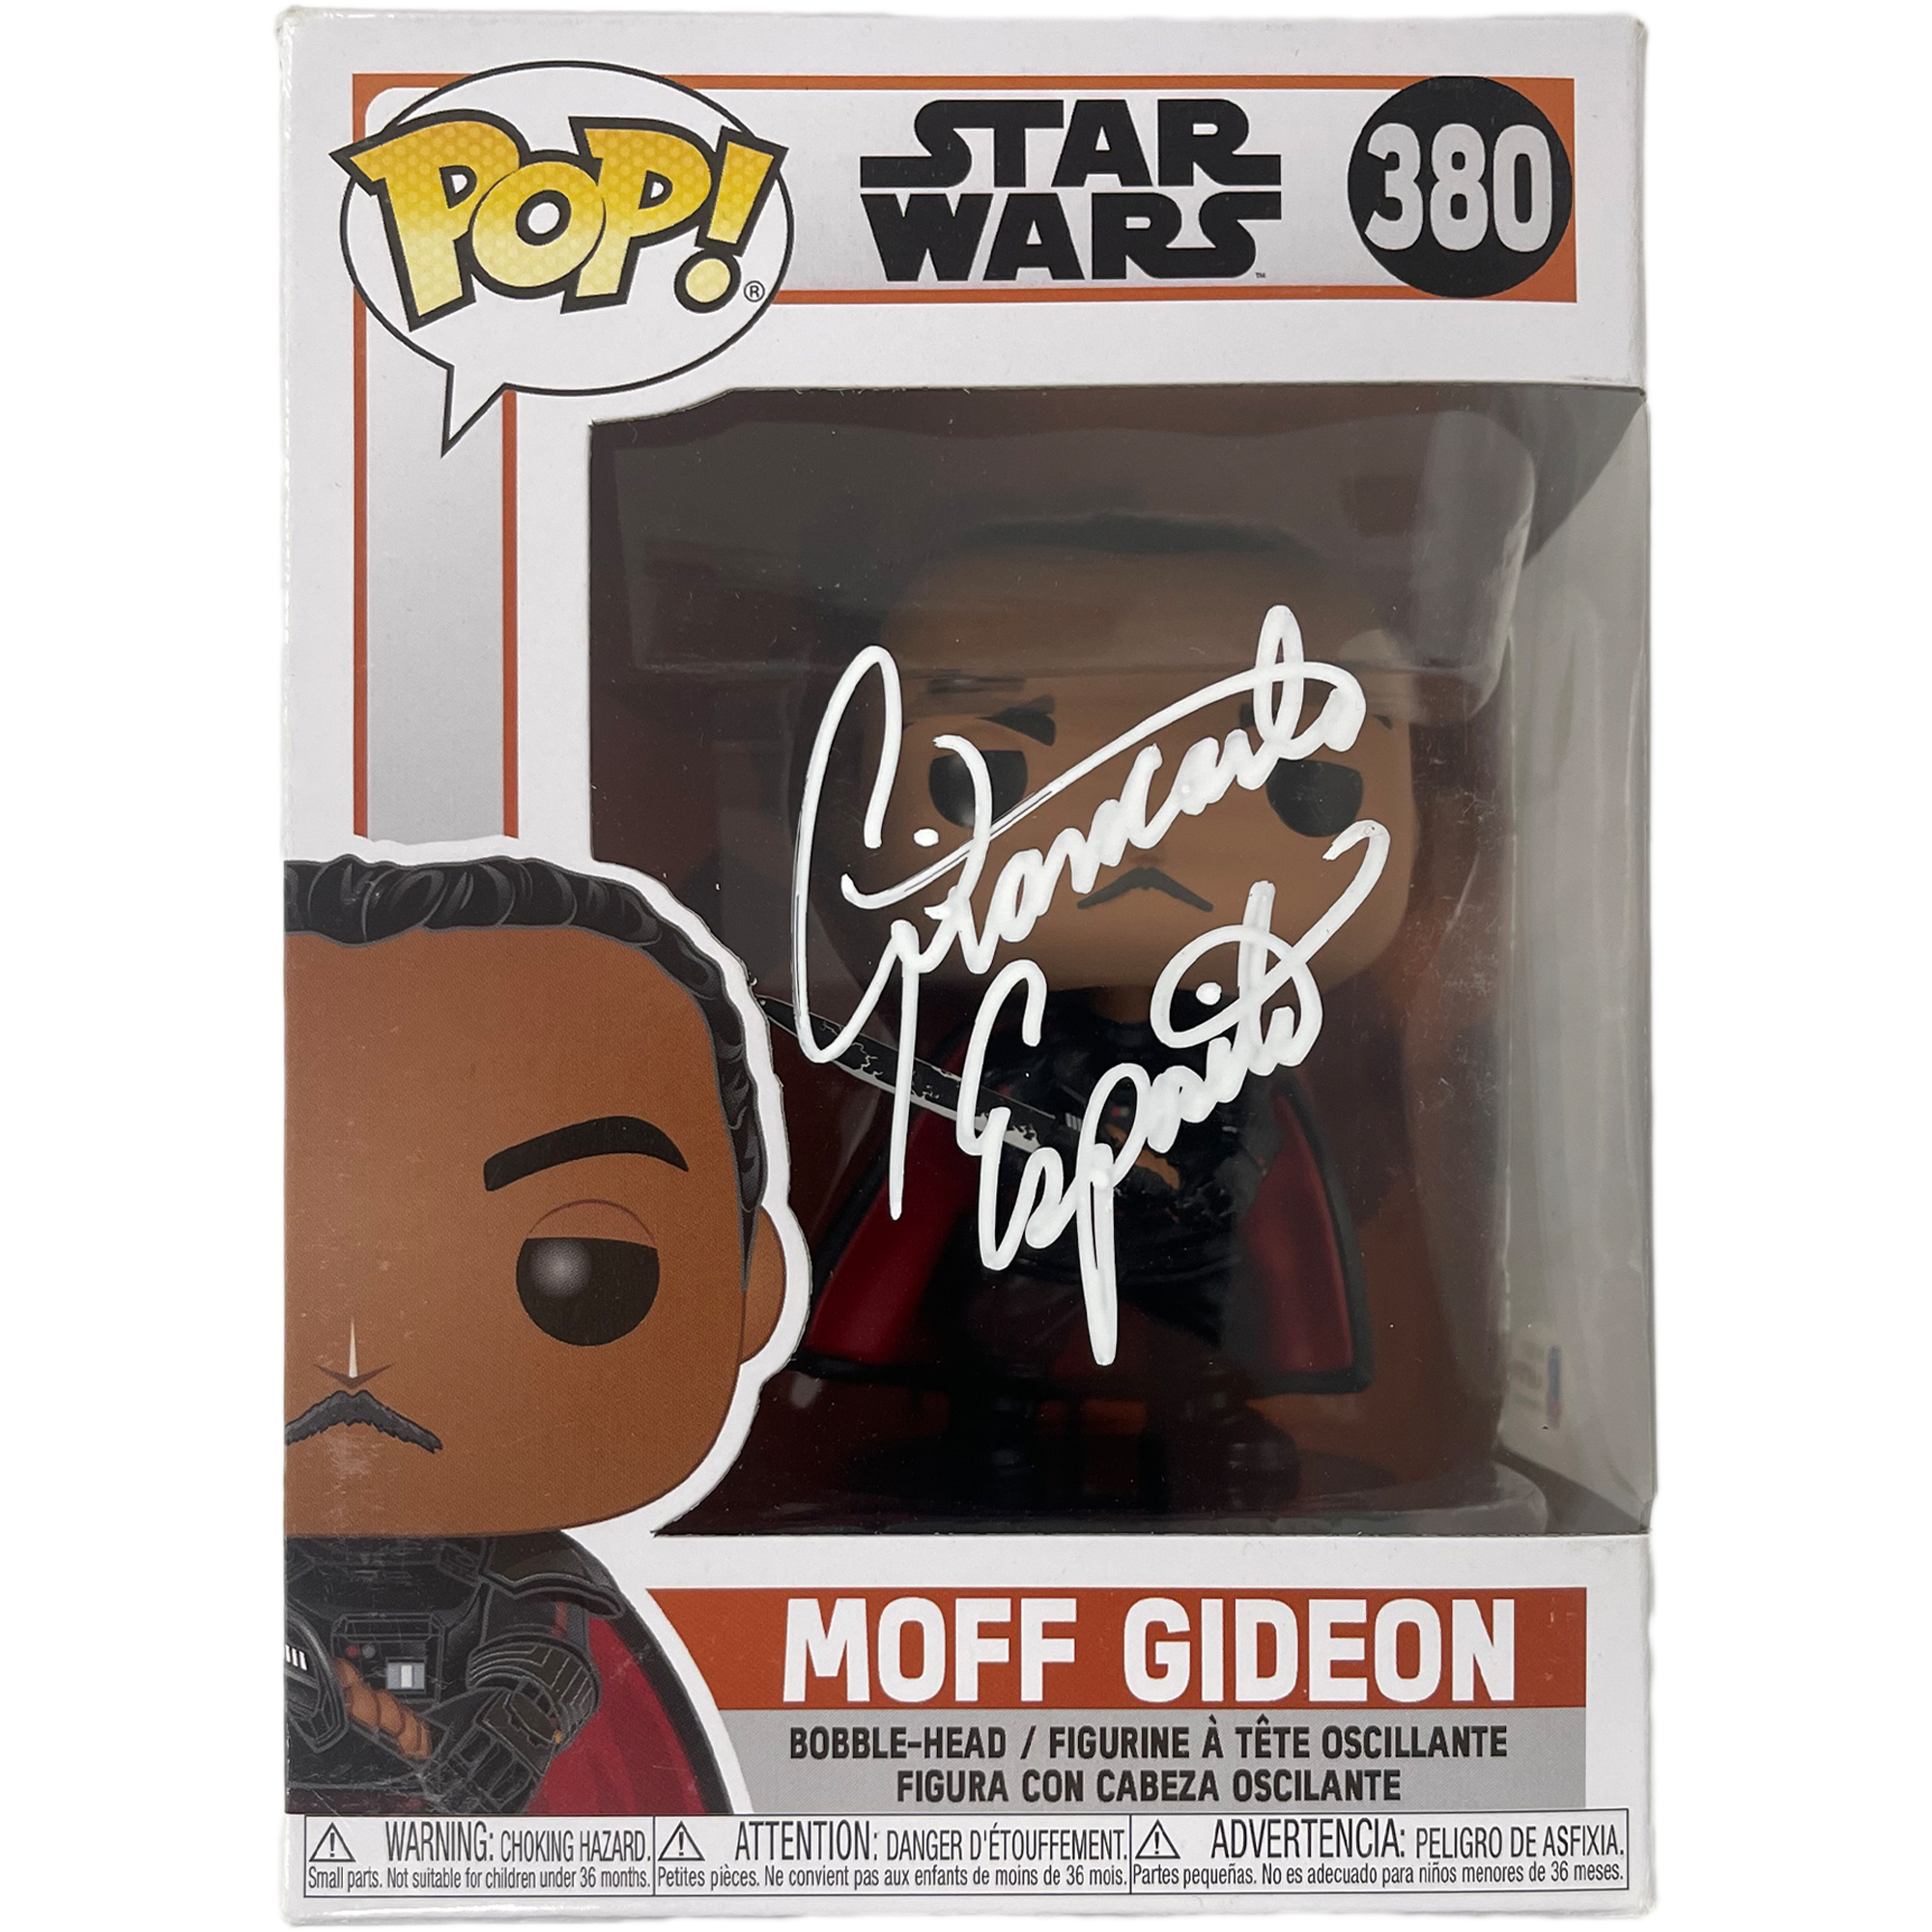 Giancarlo Esposito Signed “Star Wars” Moff Gideon #380 Fun...